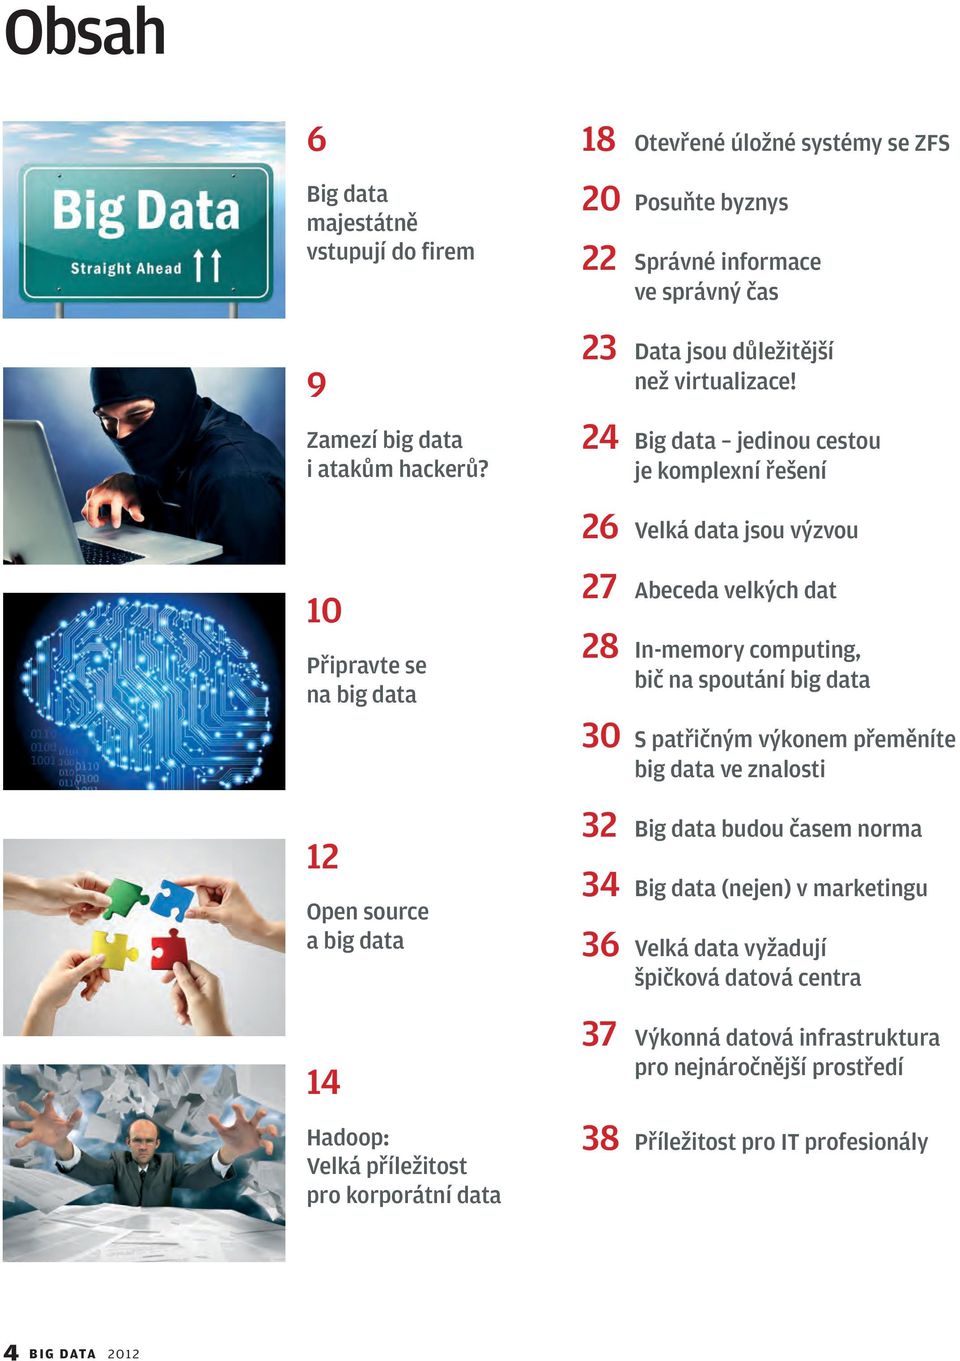 24 Big data jedinou cestou je komplexní řešení 26 Velká data jsou výzvou 10 Připravte se na big data 12 Open source a big data 14 Hadoop: Velká příležitost pro korporátní data 27